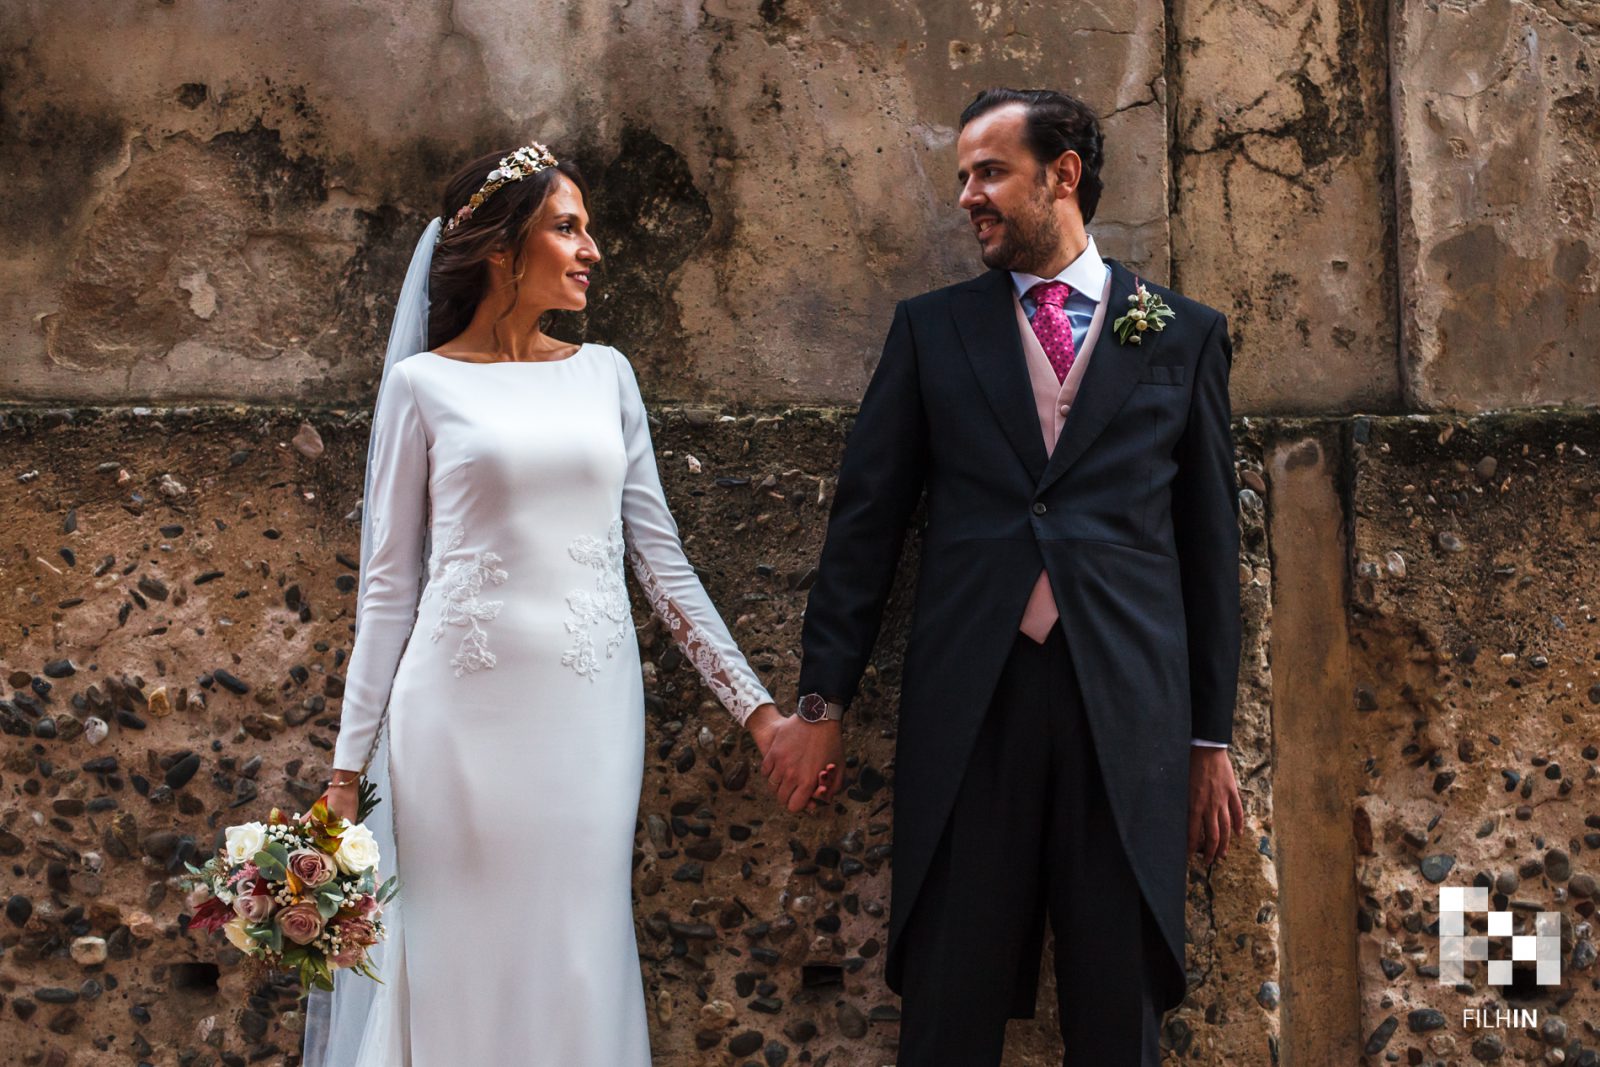 La boda de Rocío y Ernesto | FILHIN